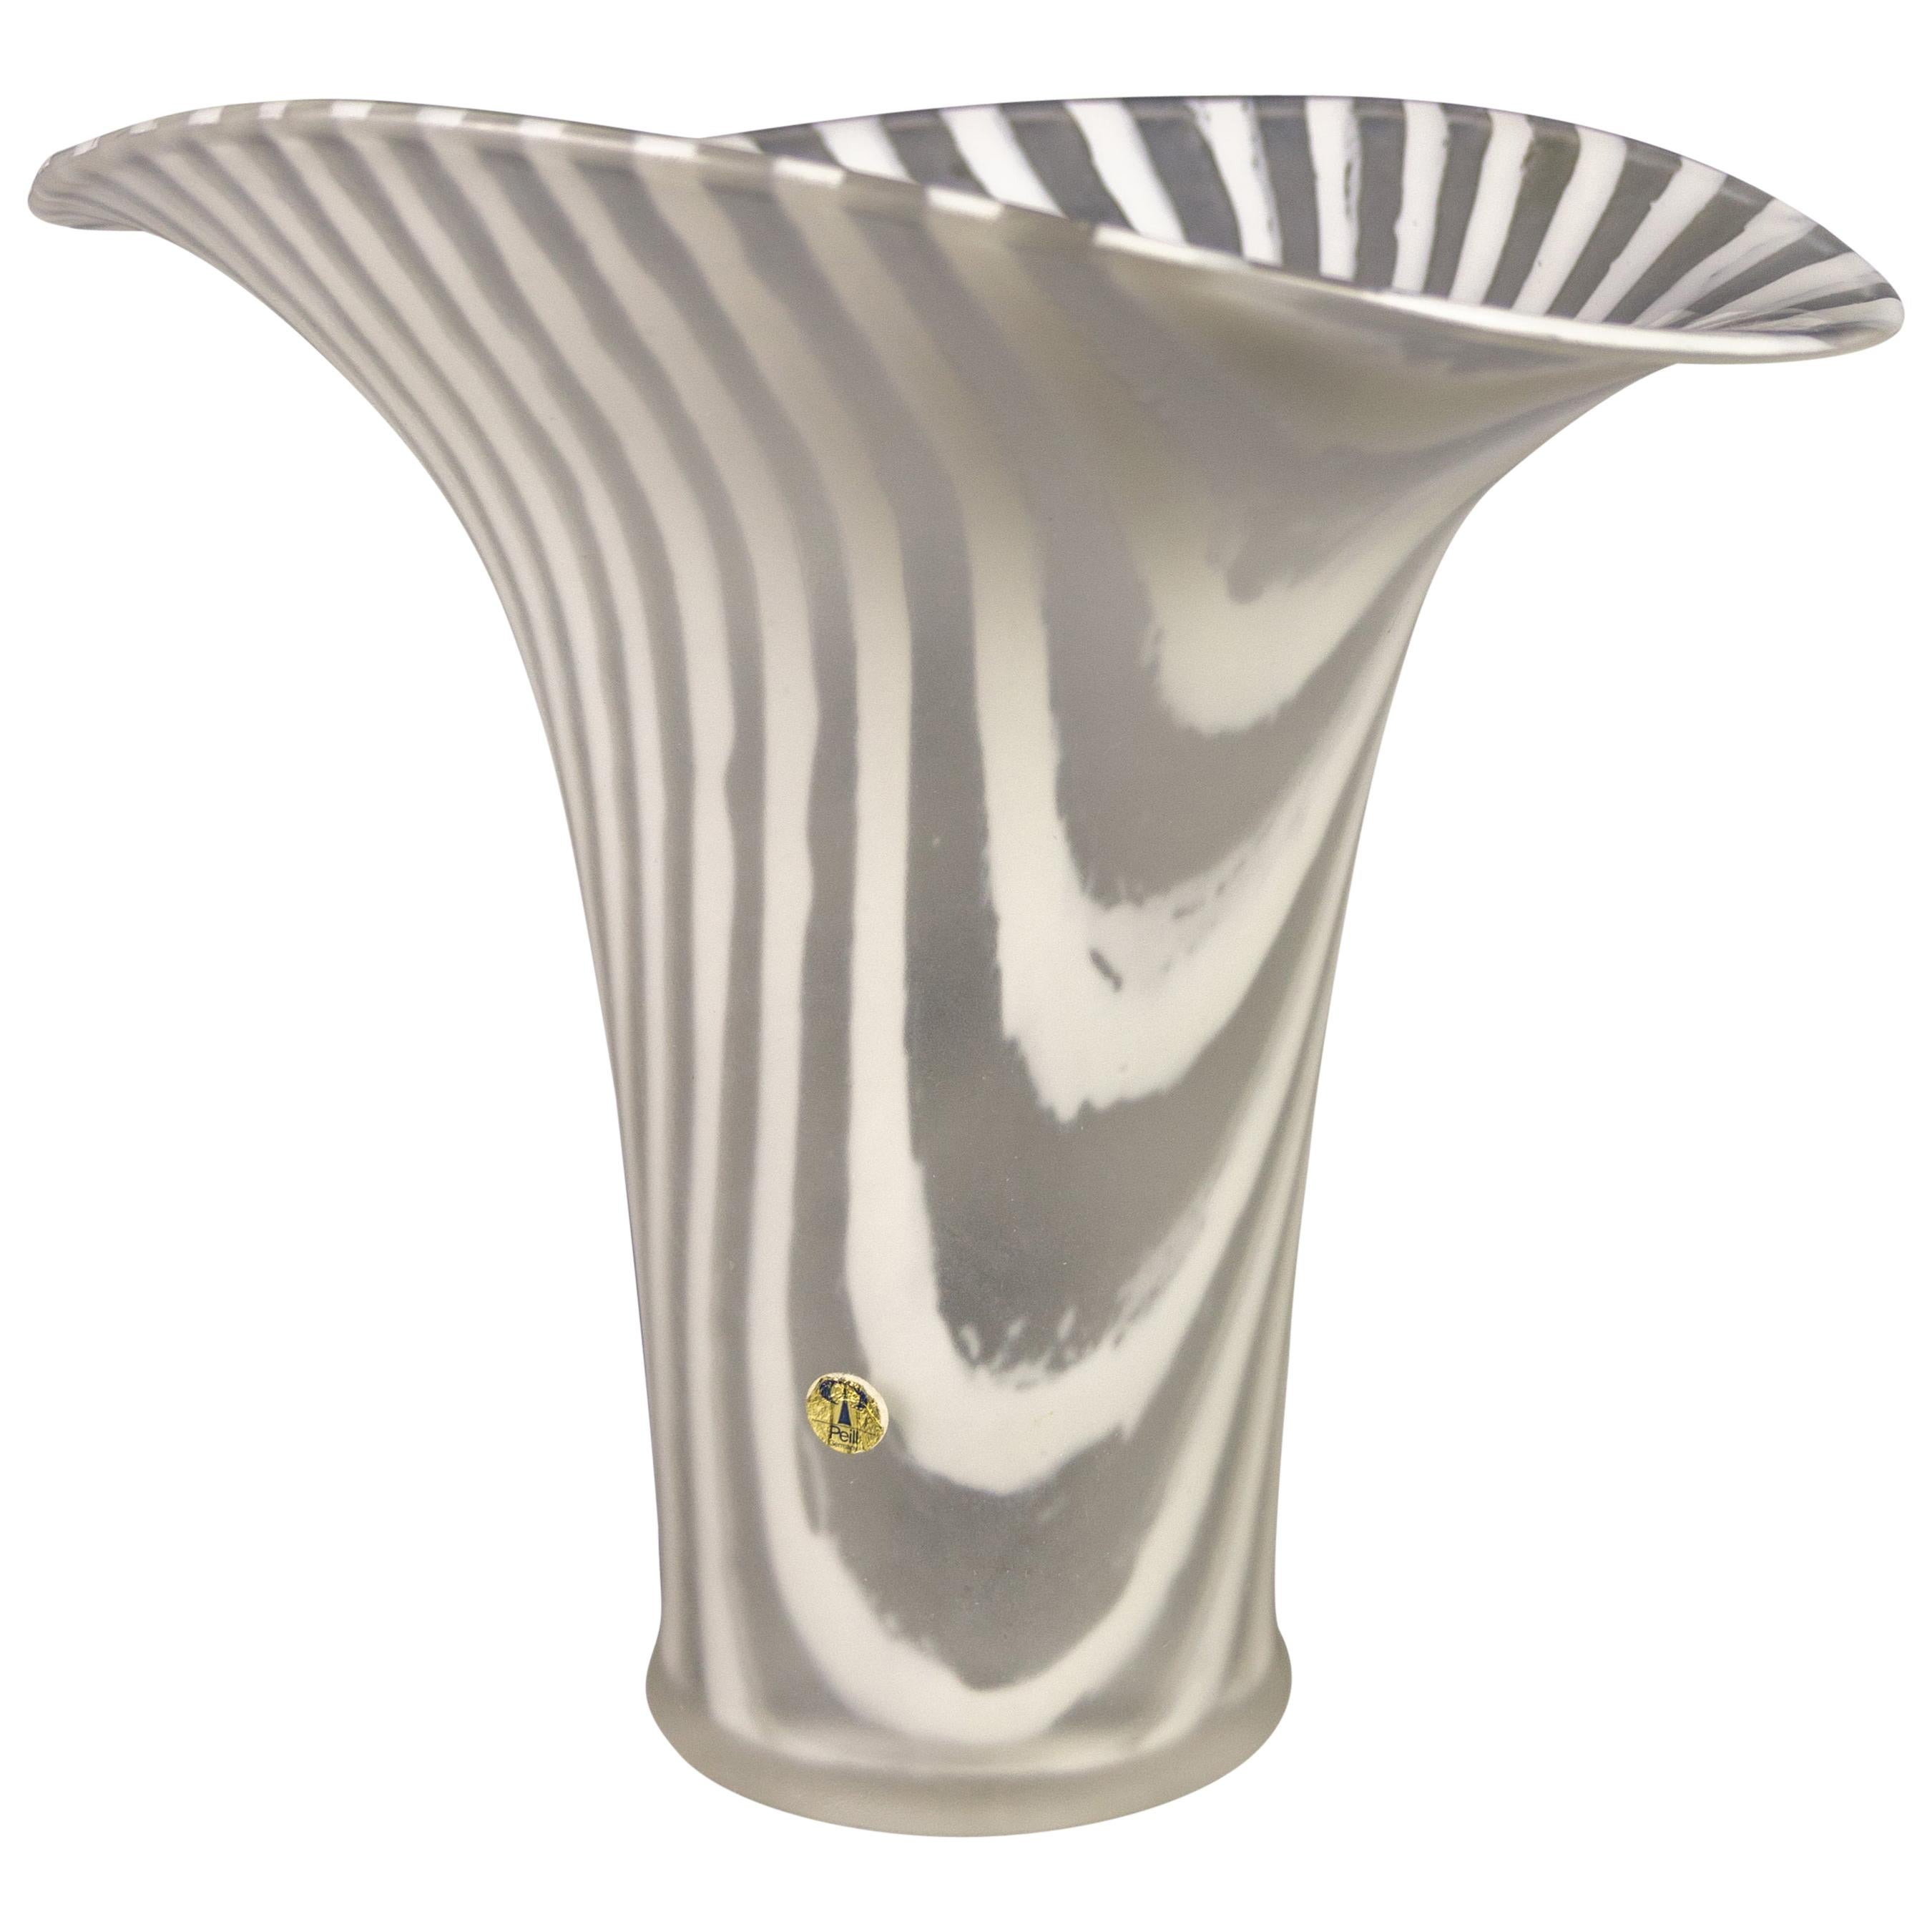 Peill and Putzler White Striped Glass Vase, 1970s